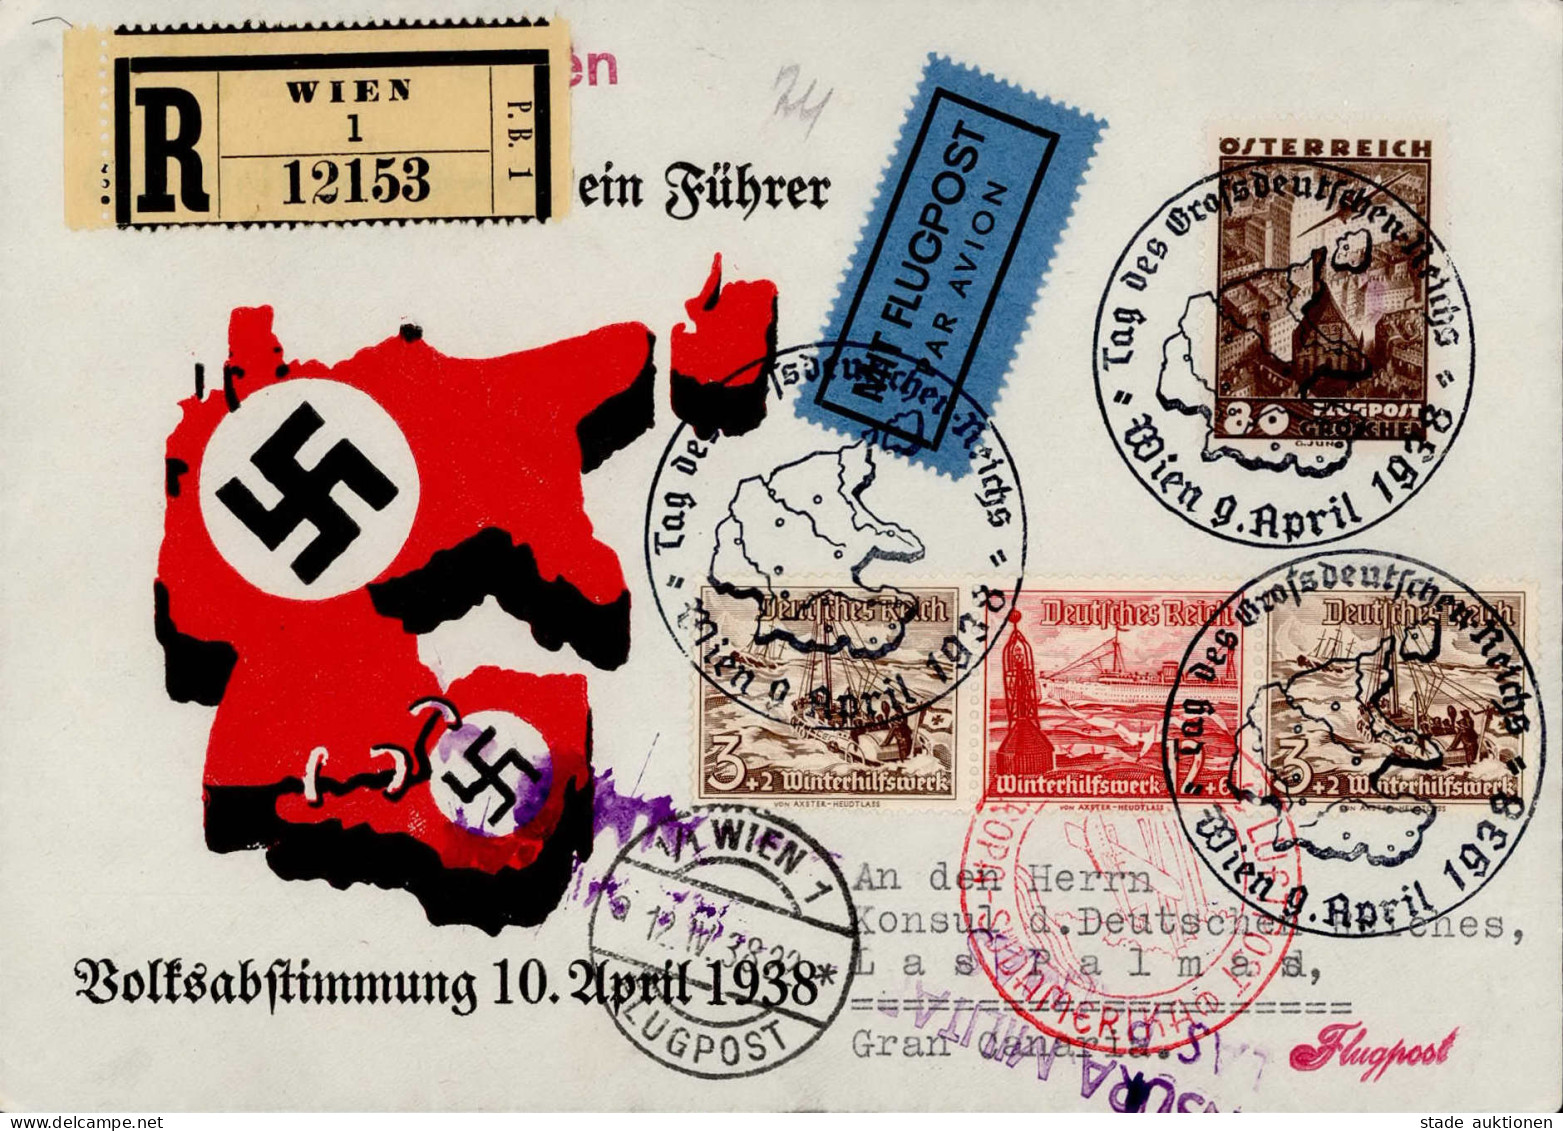 Ostmark (Österreich) Volksabstimmung 10. April 1938 Luftpost Nach Gran Canaria Mischfrankatur 3.Reich WHW/Österreich, Ze - Weltkrieg 1939-45